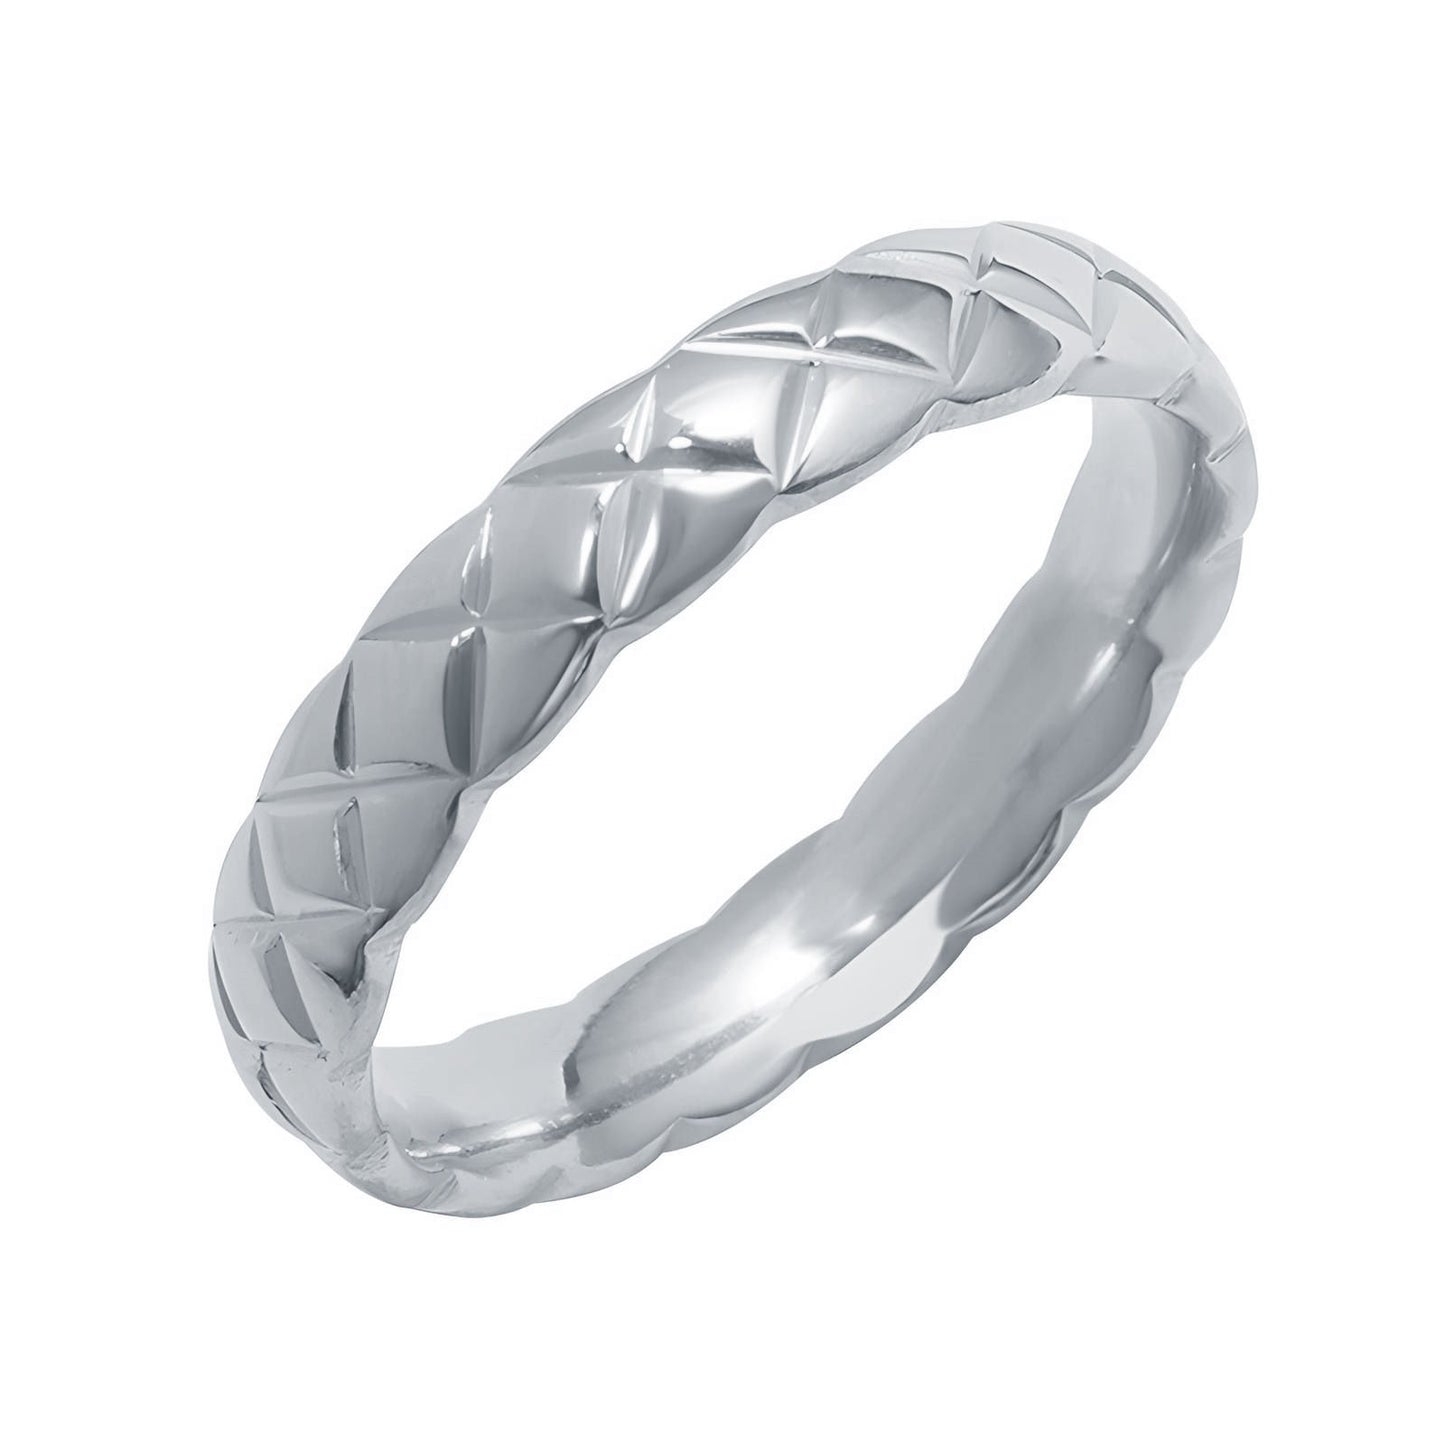 Stainless steel finger ring